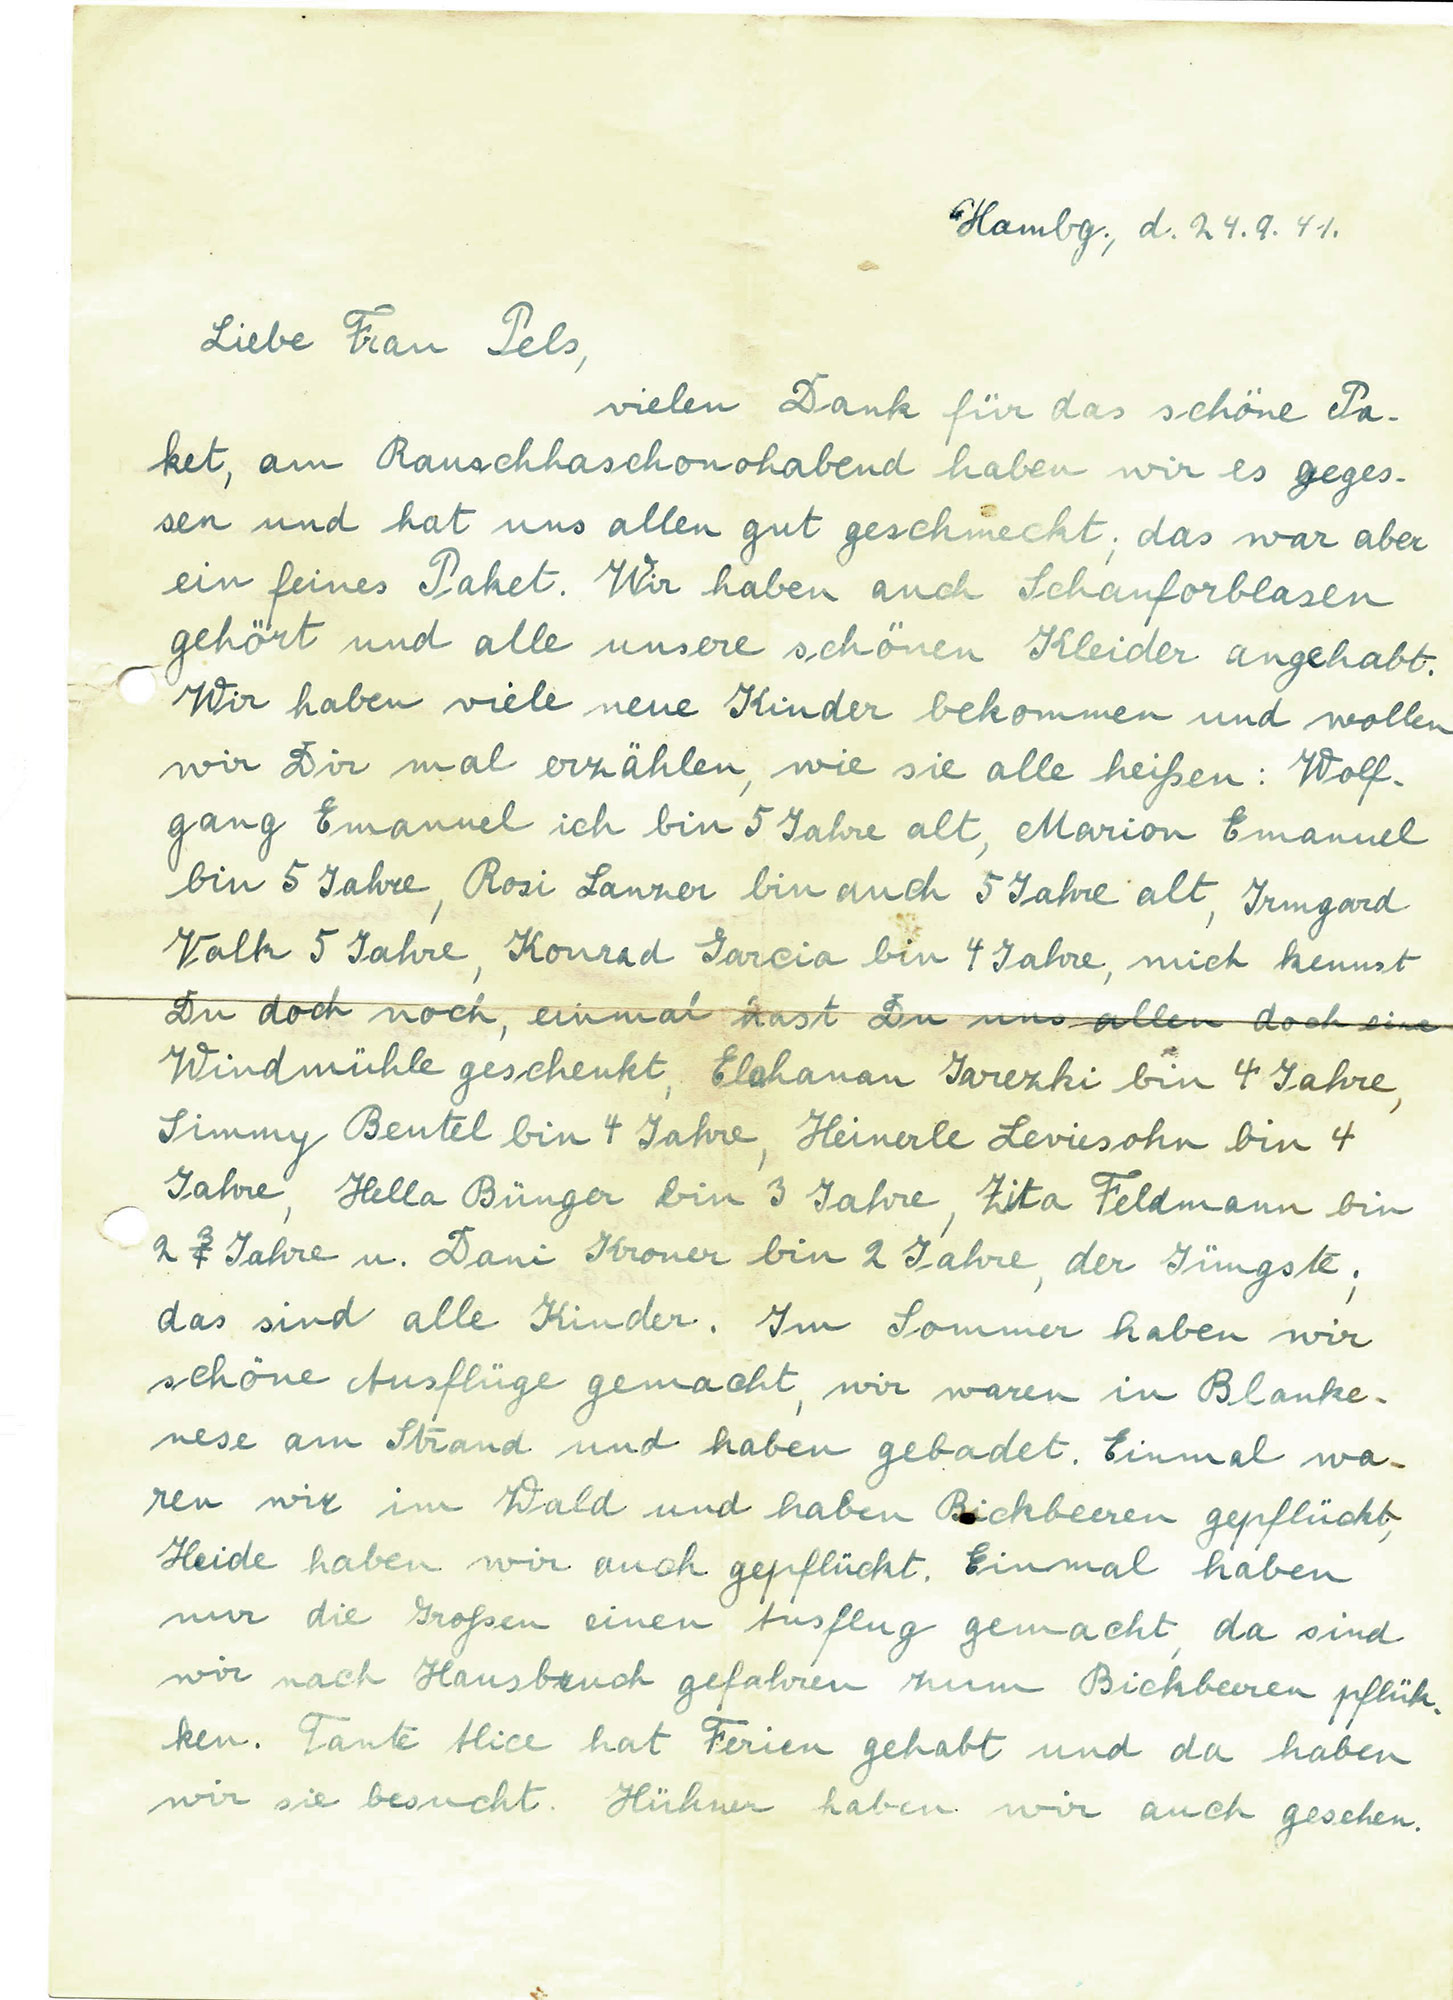 A letter from Alice Gramm, Hamburg, 24 September 1941